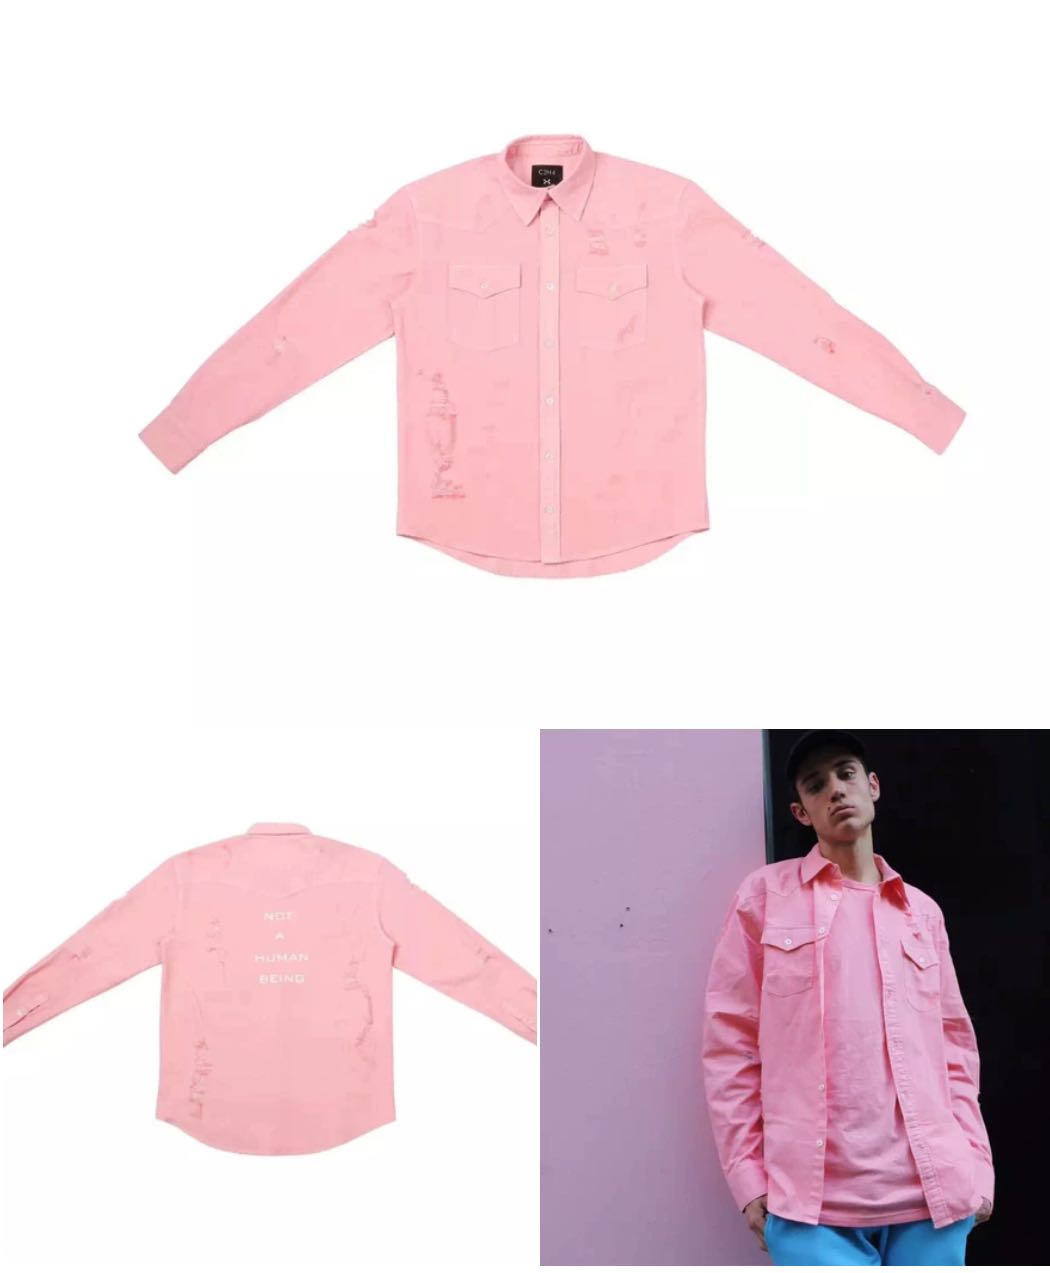 LA 15SS "MARSHMALLOW" Pink Distressed Shirt size M - 1